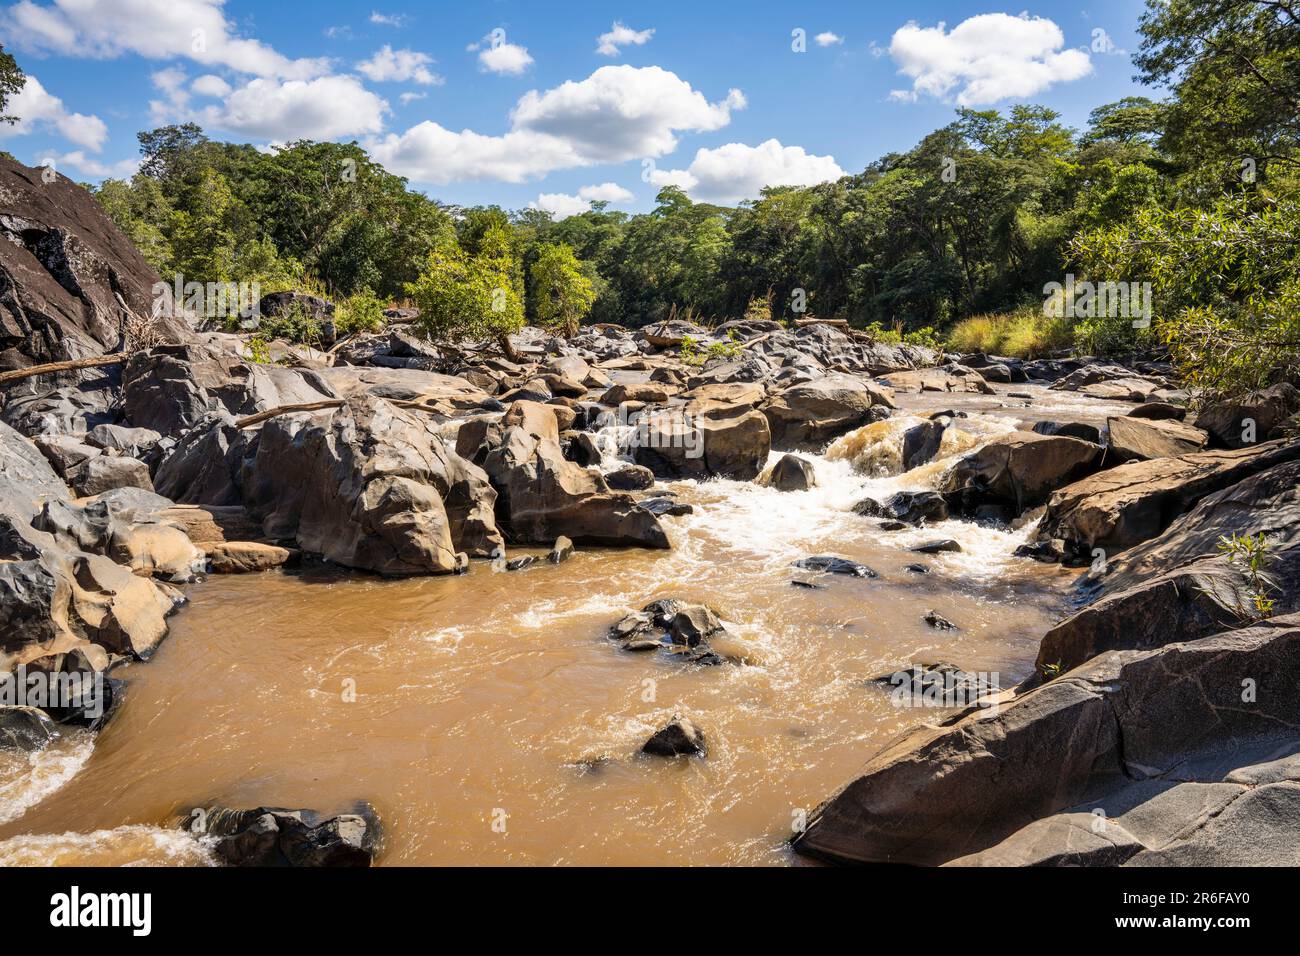 Rivière BUA dans la réserve naturelle de Nkhotakota, Malawi Banque D'Images